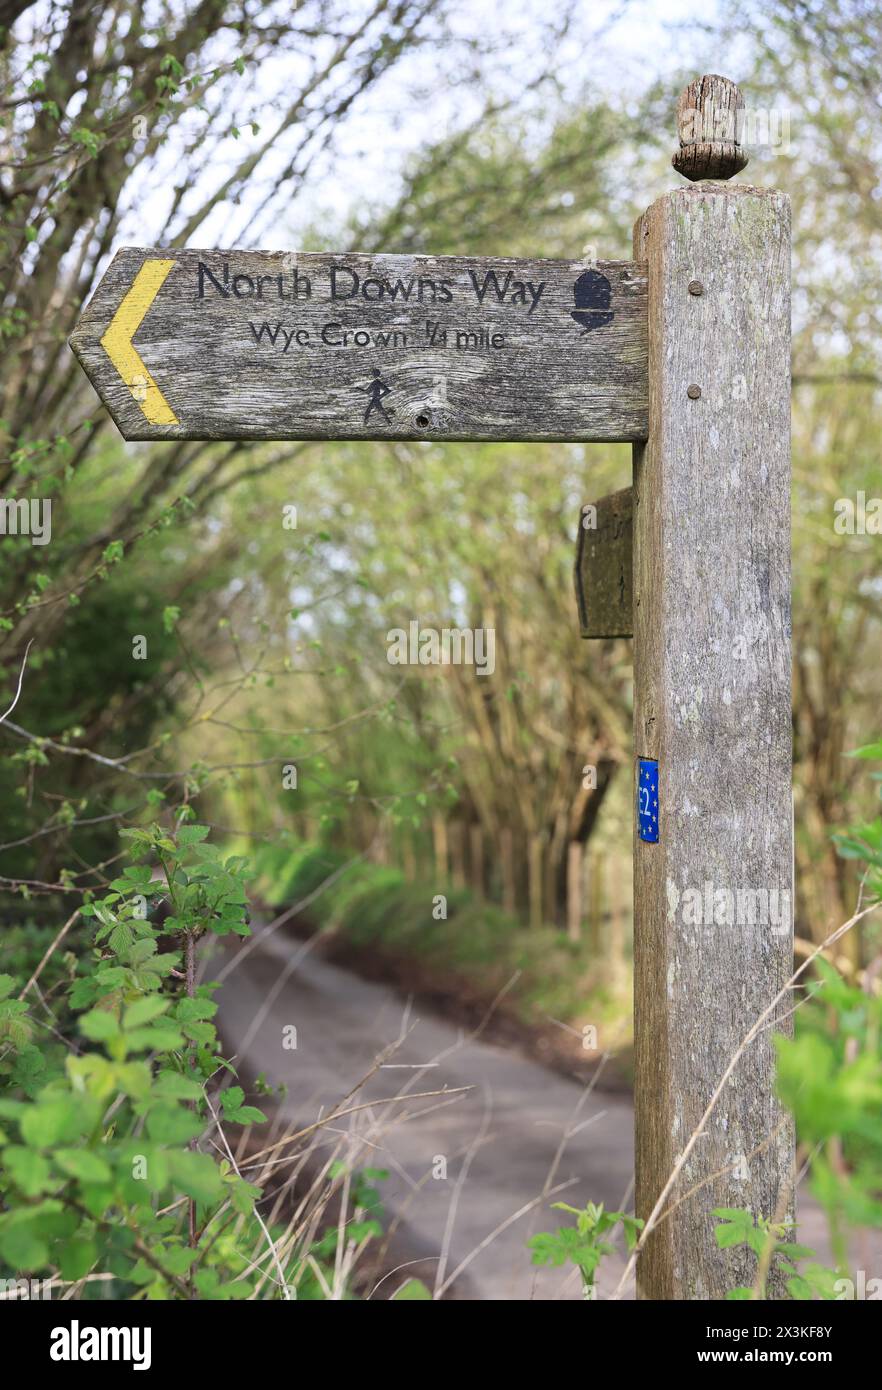 Wegweiser für den North Downs Way Fußweg in der Nähe von Wye, Ashford, Kent, Großbritannien Stockfoto